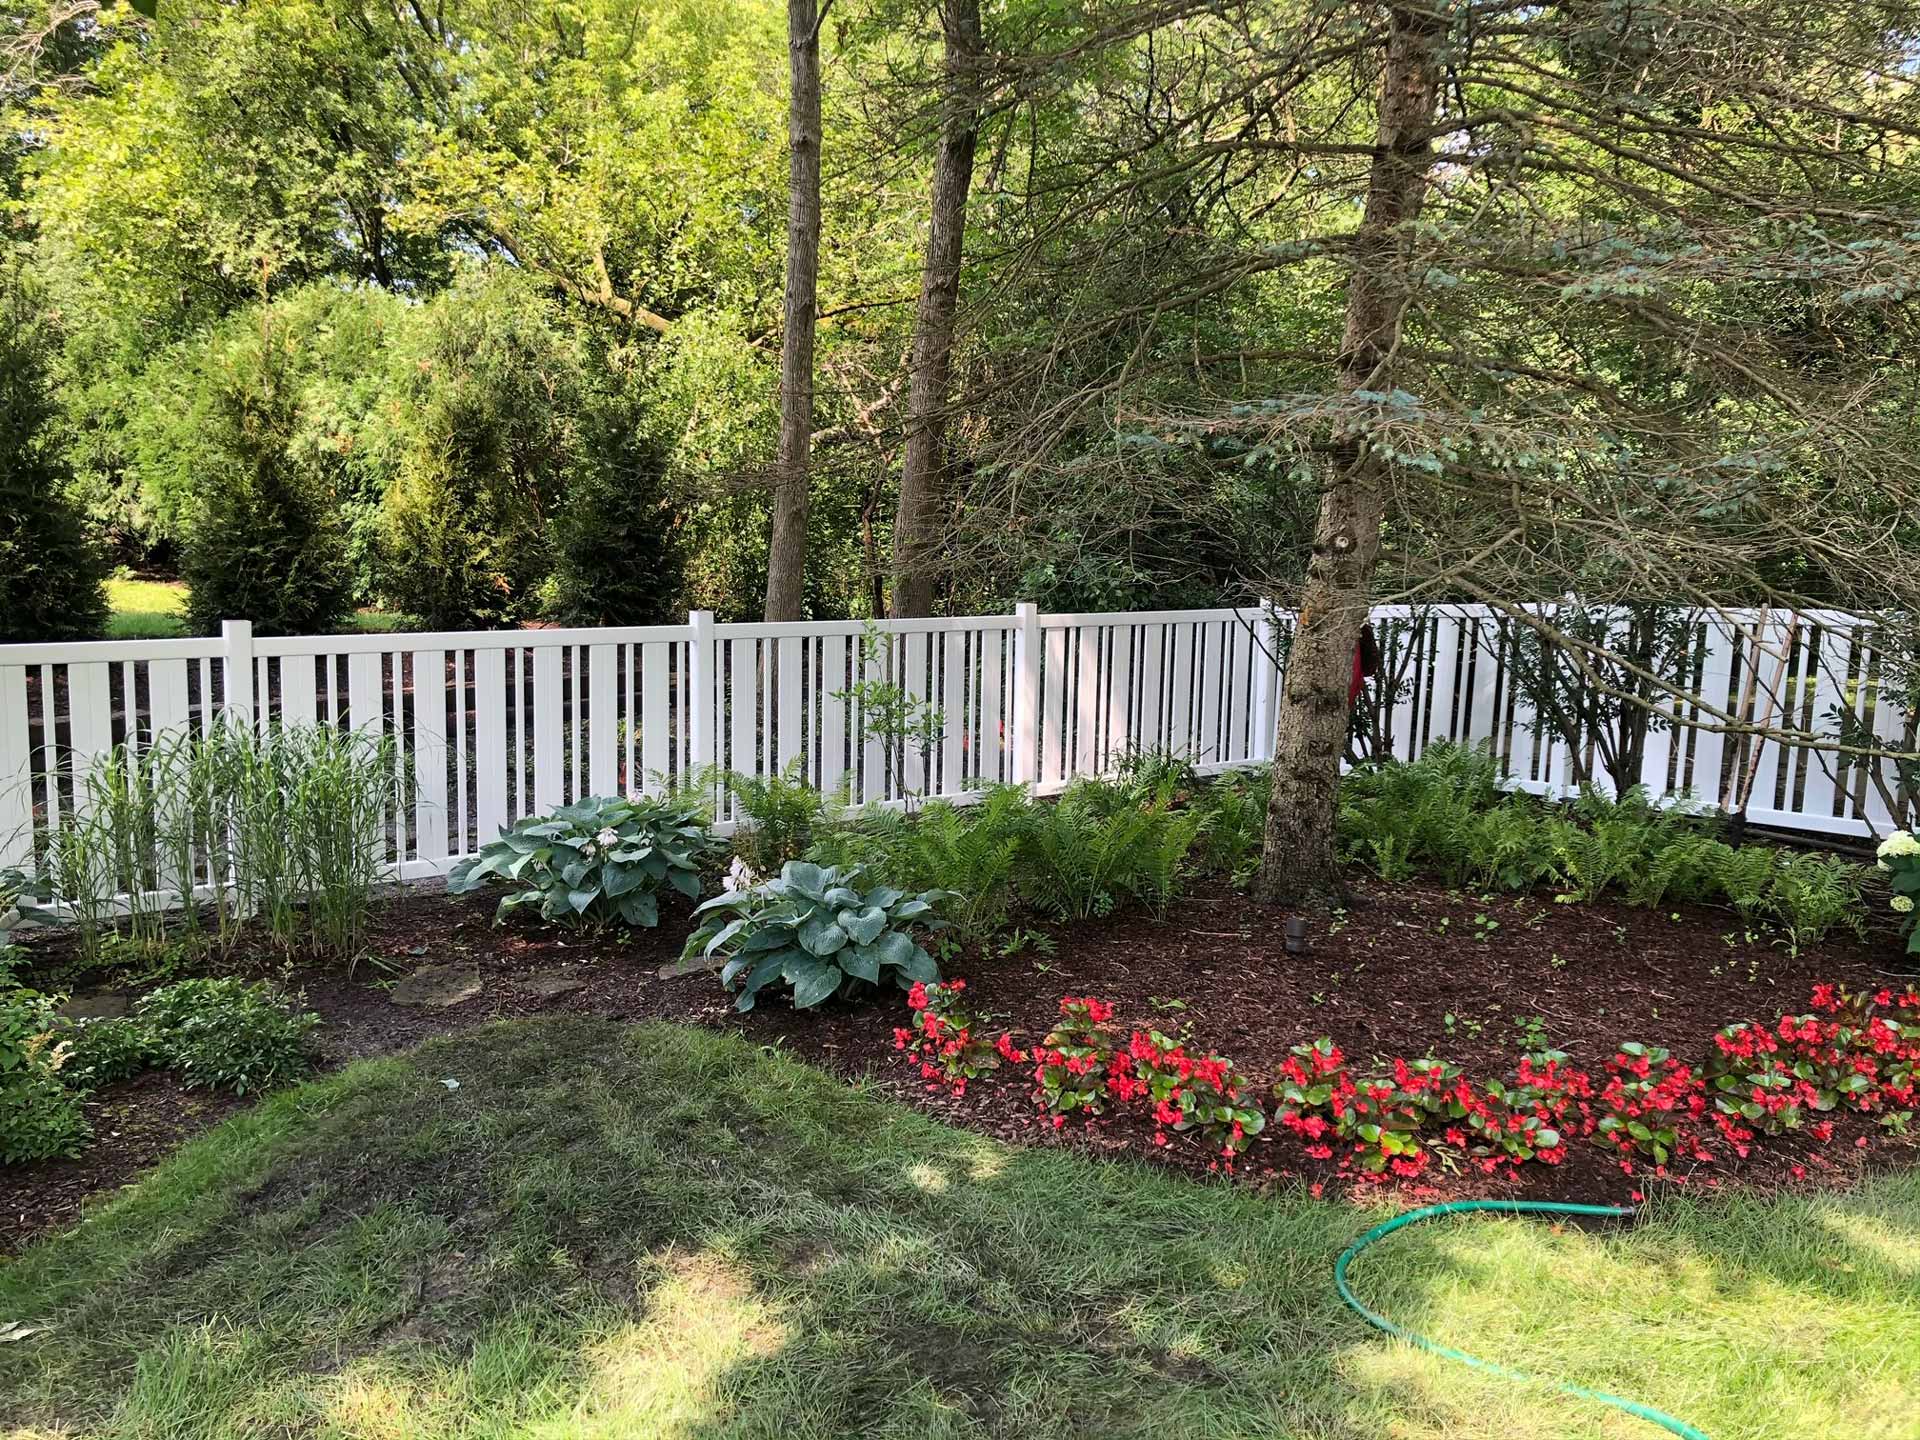 Decorative white vinyl fence installed around a flower bed